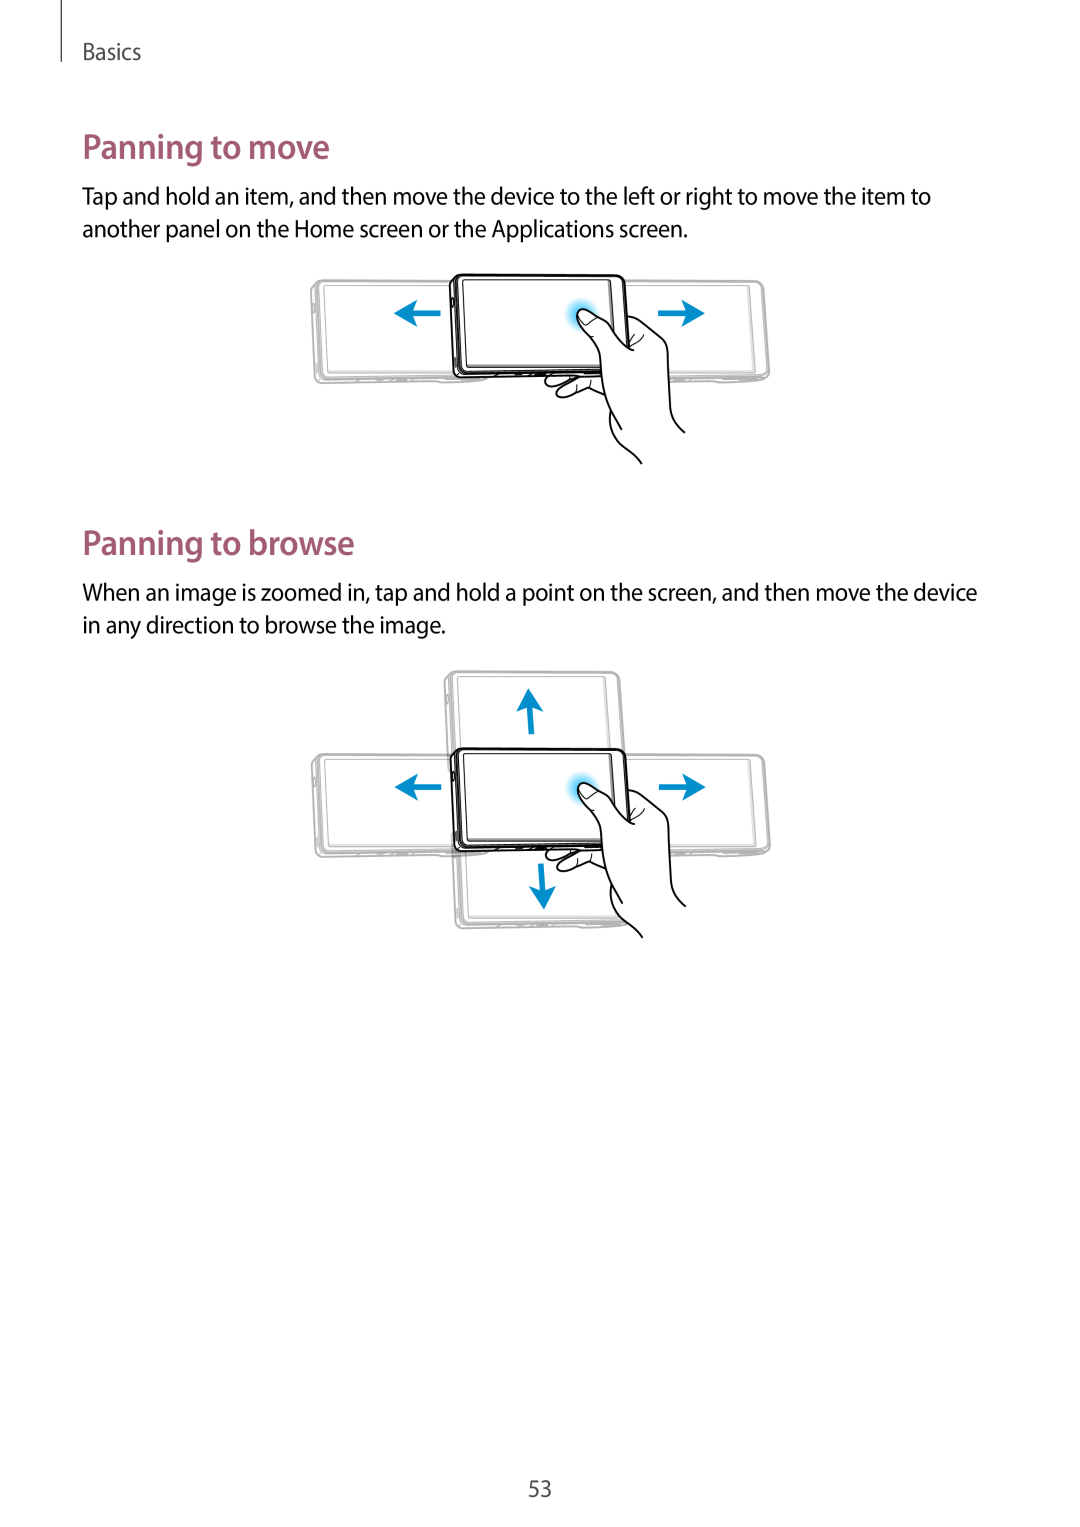 Samsung EK-GC100 user manual Panning to move, Panning to browse, Basics 